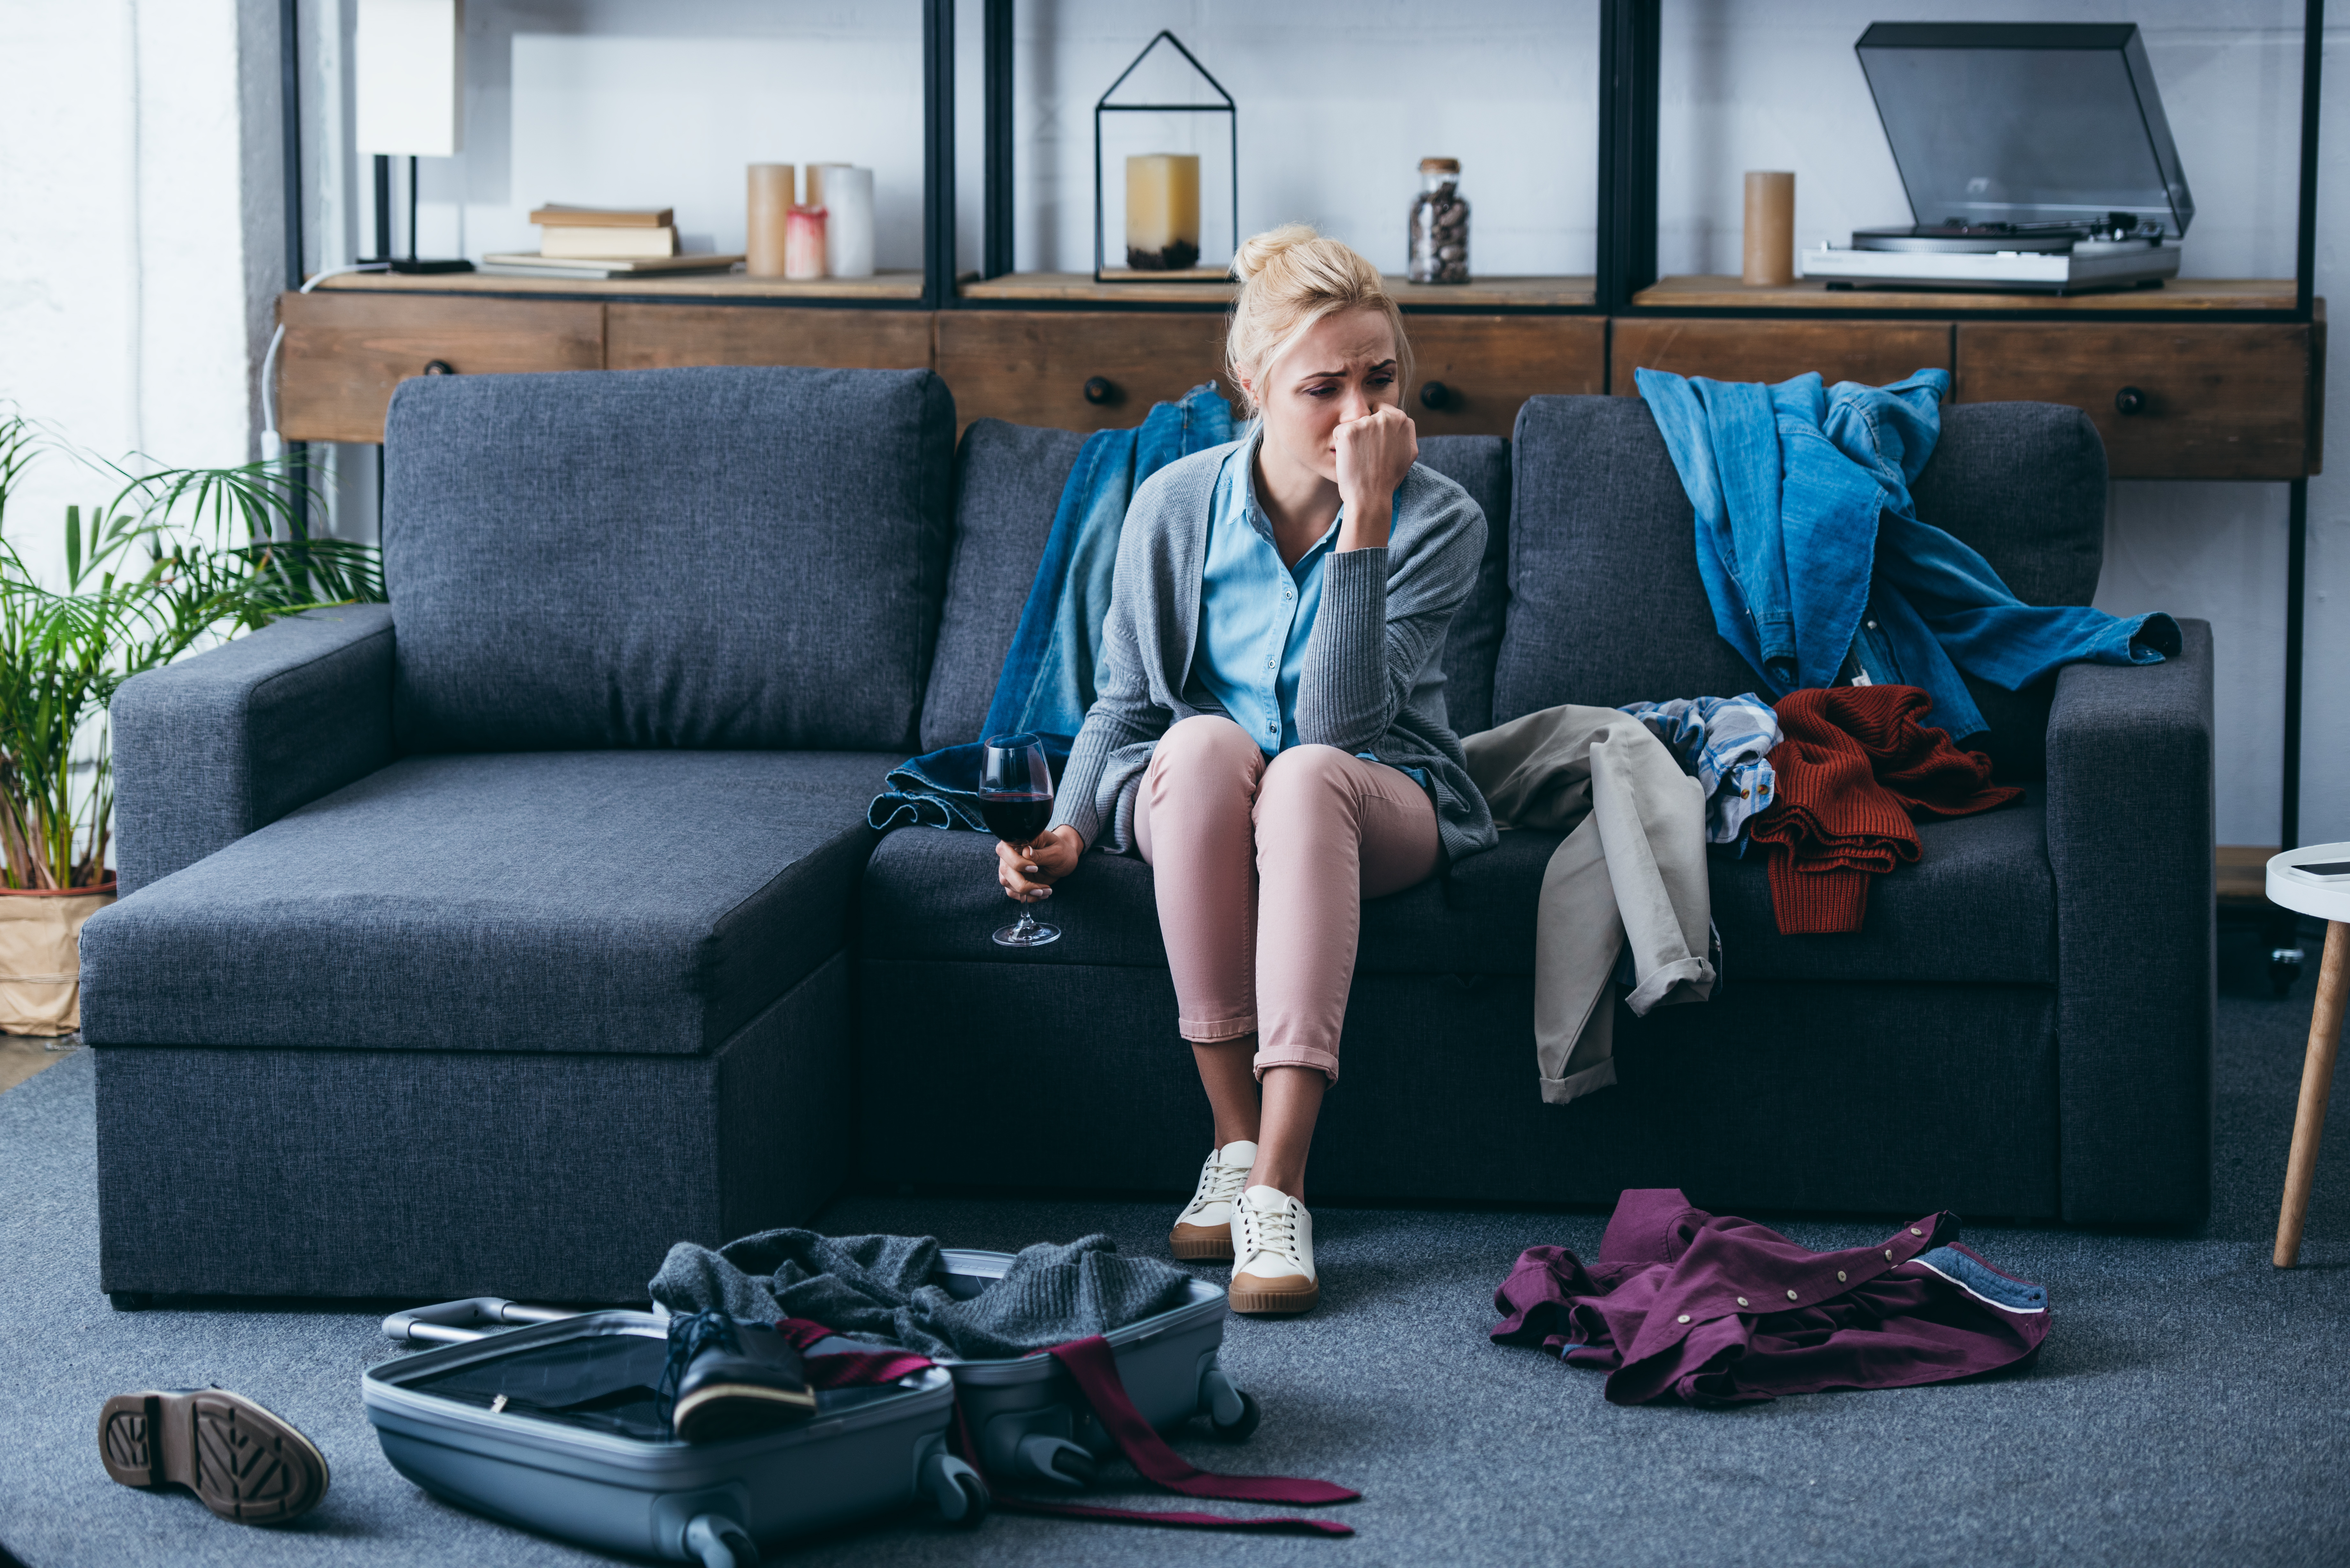 Eine traurig dreinblickende Frau beim Packen | Quelle: Shutterstock